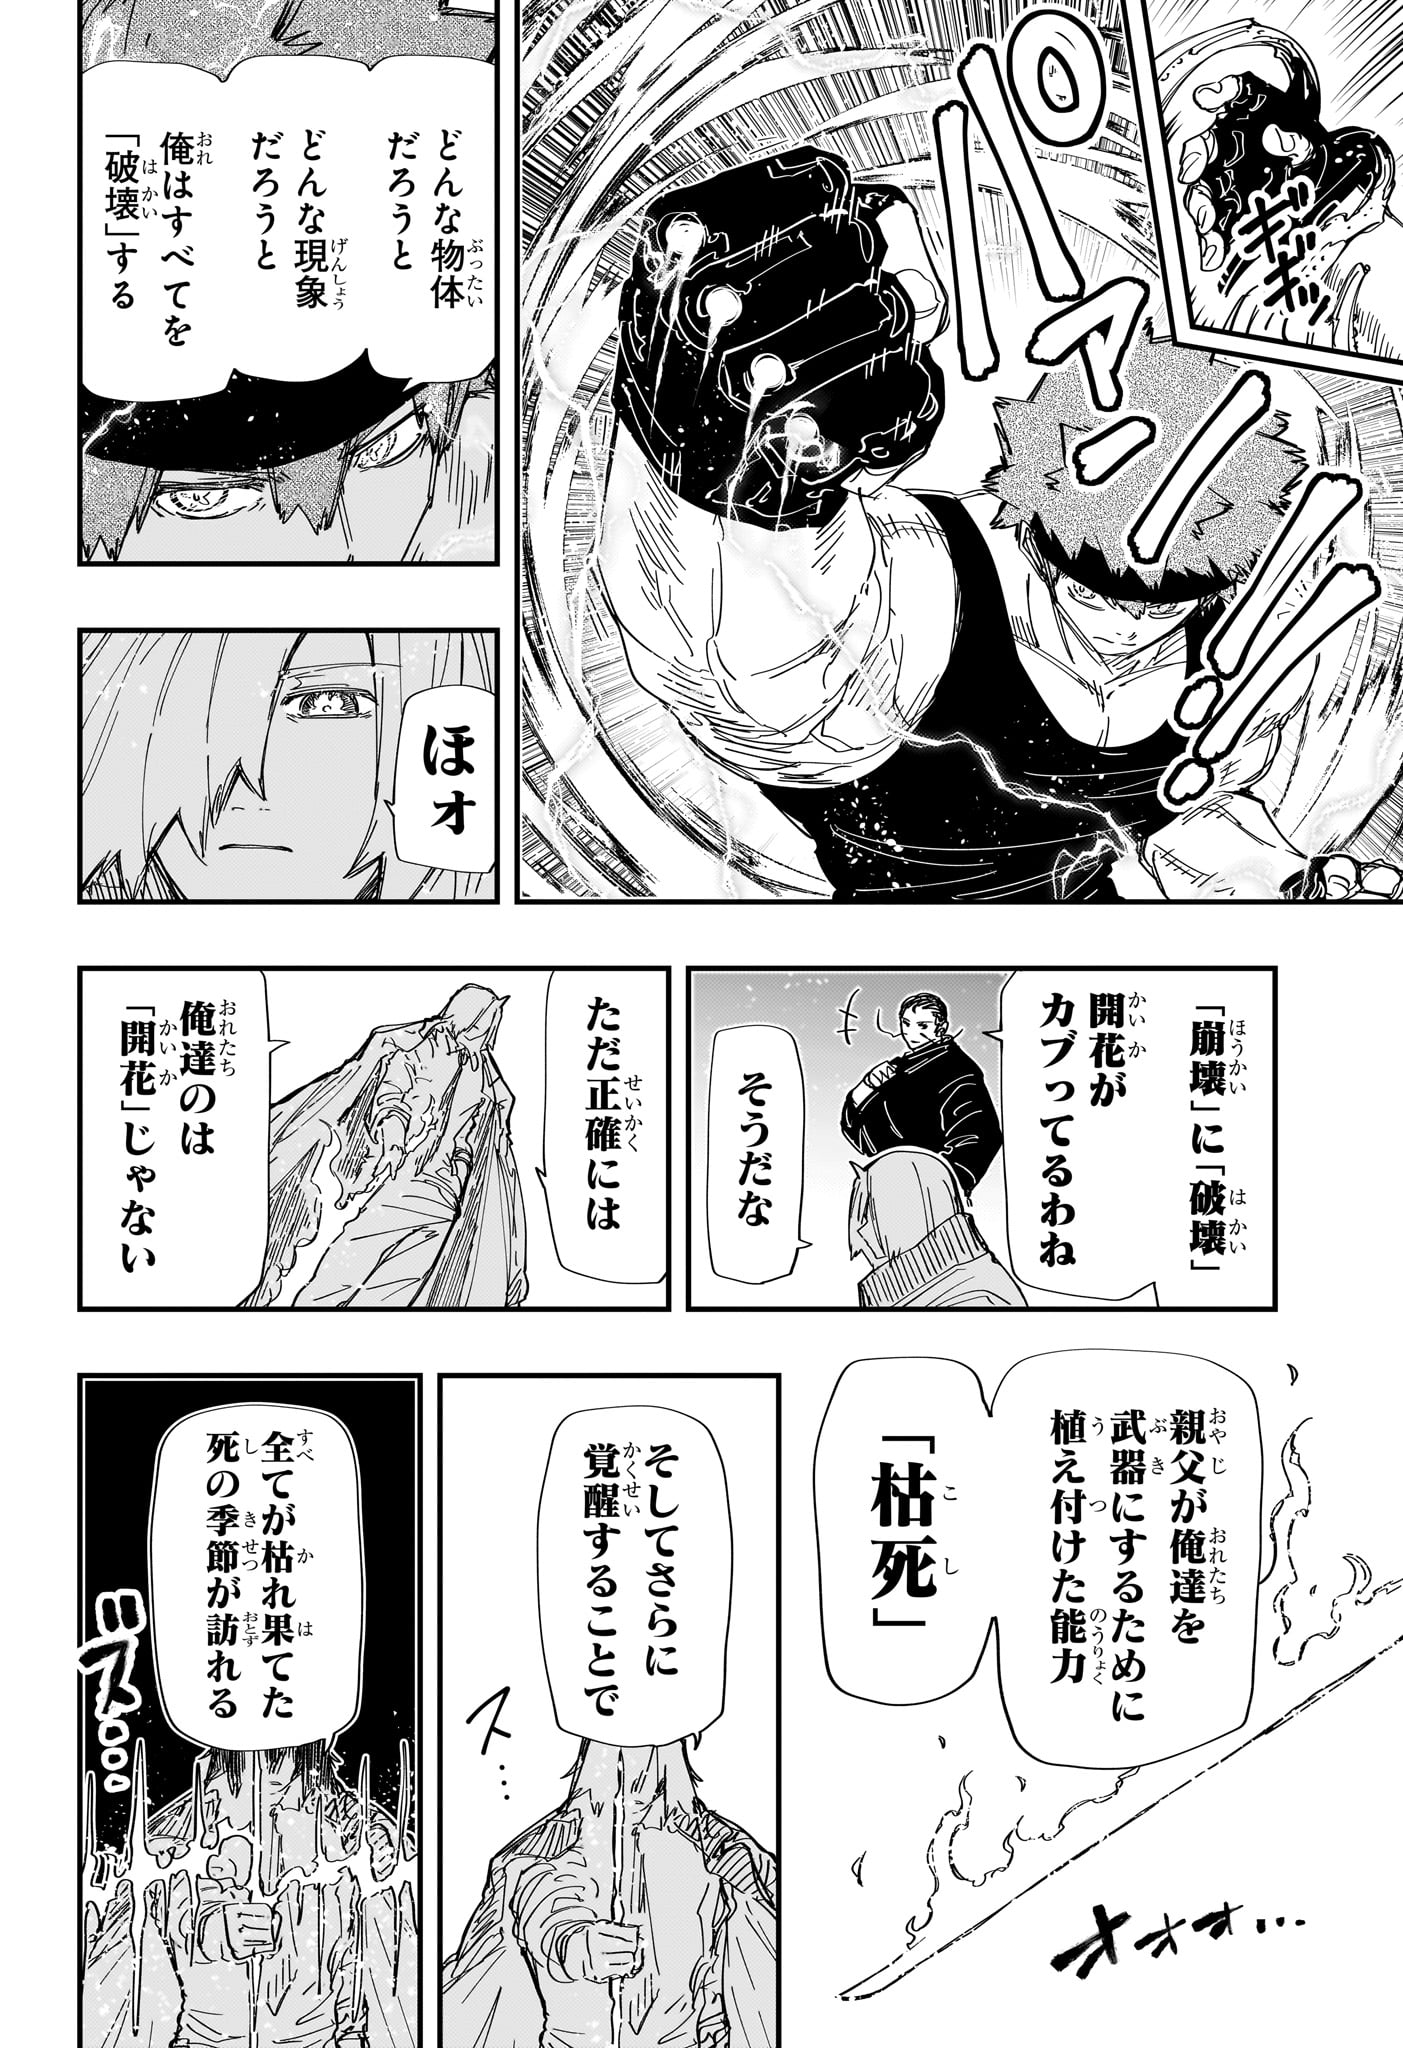 Yozakura-san Chi no Daisakusen - Chapter 235 - Page 4